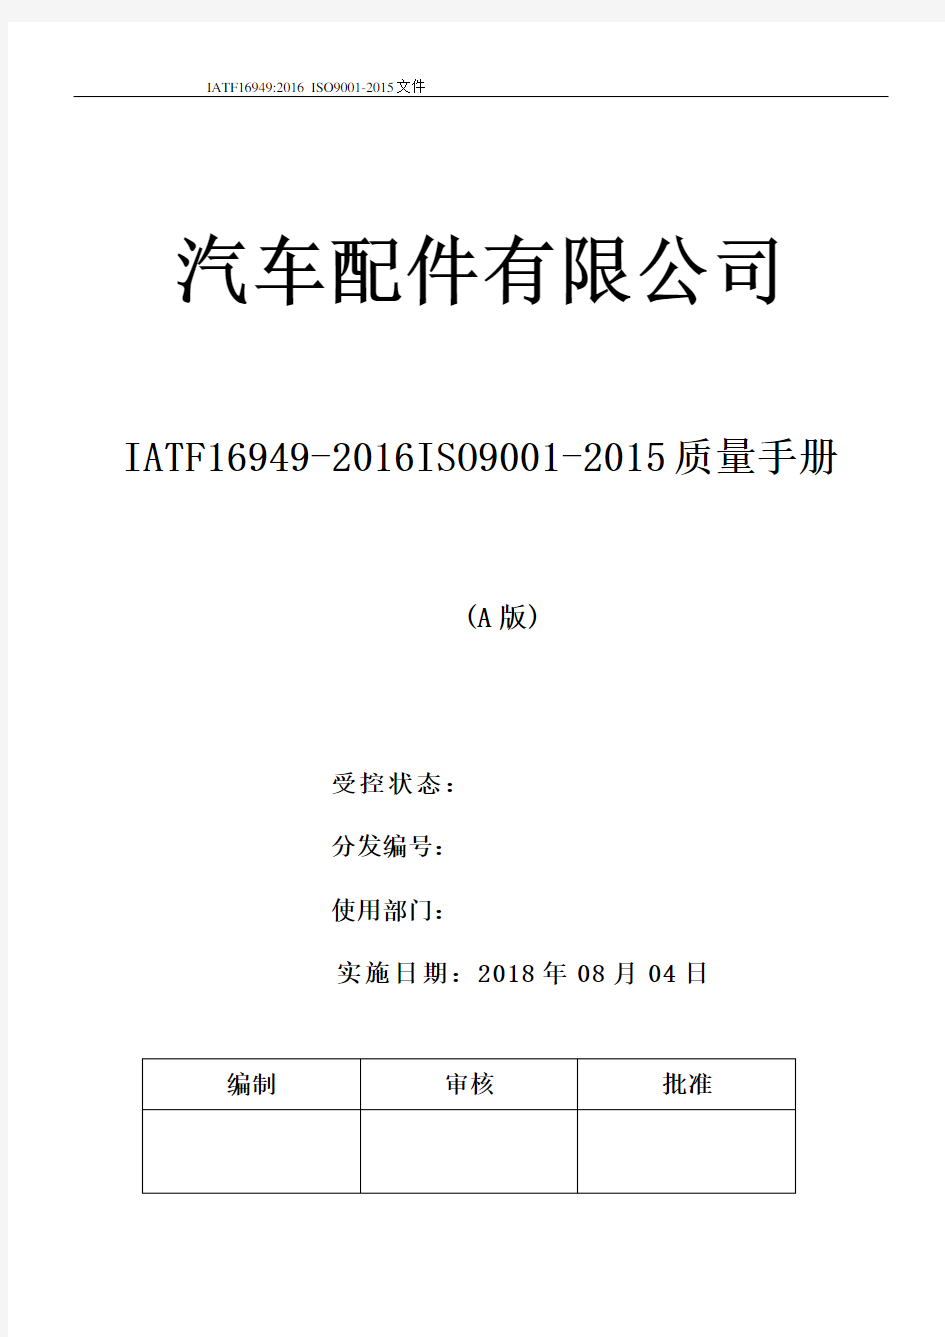 最新汽车配件有限公司IATF16949-2016iISO9001-2015全套文件(手册程序文件记录表格)